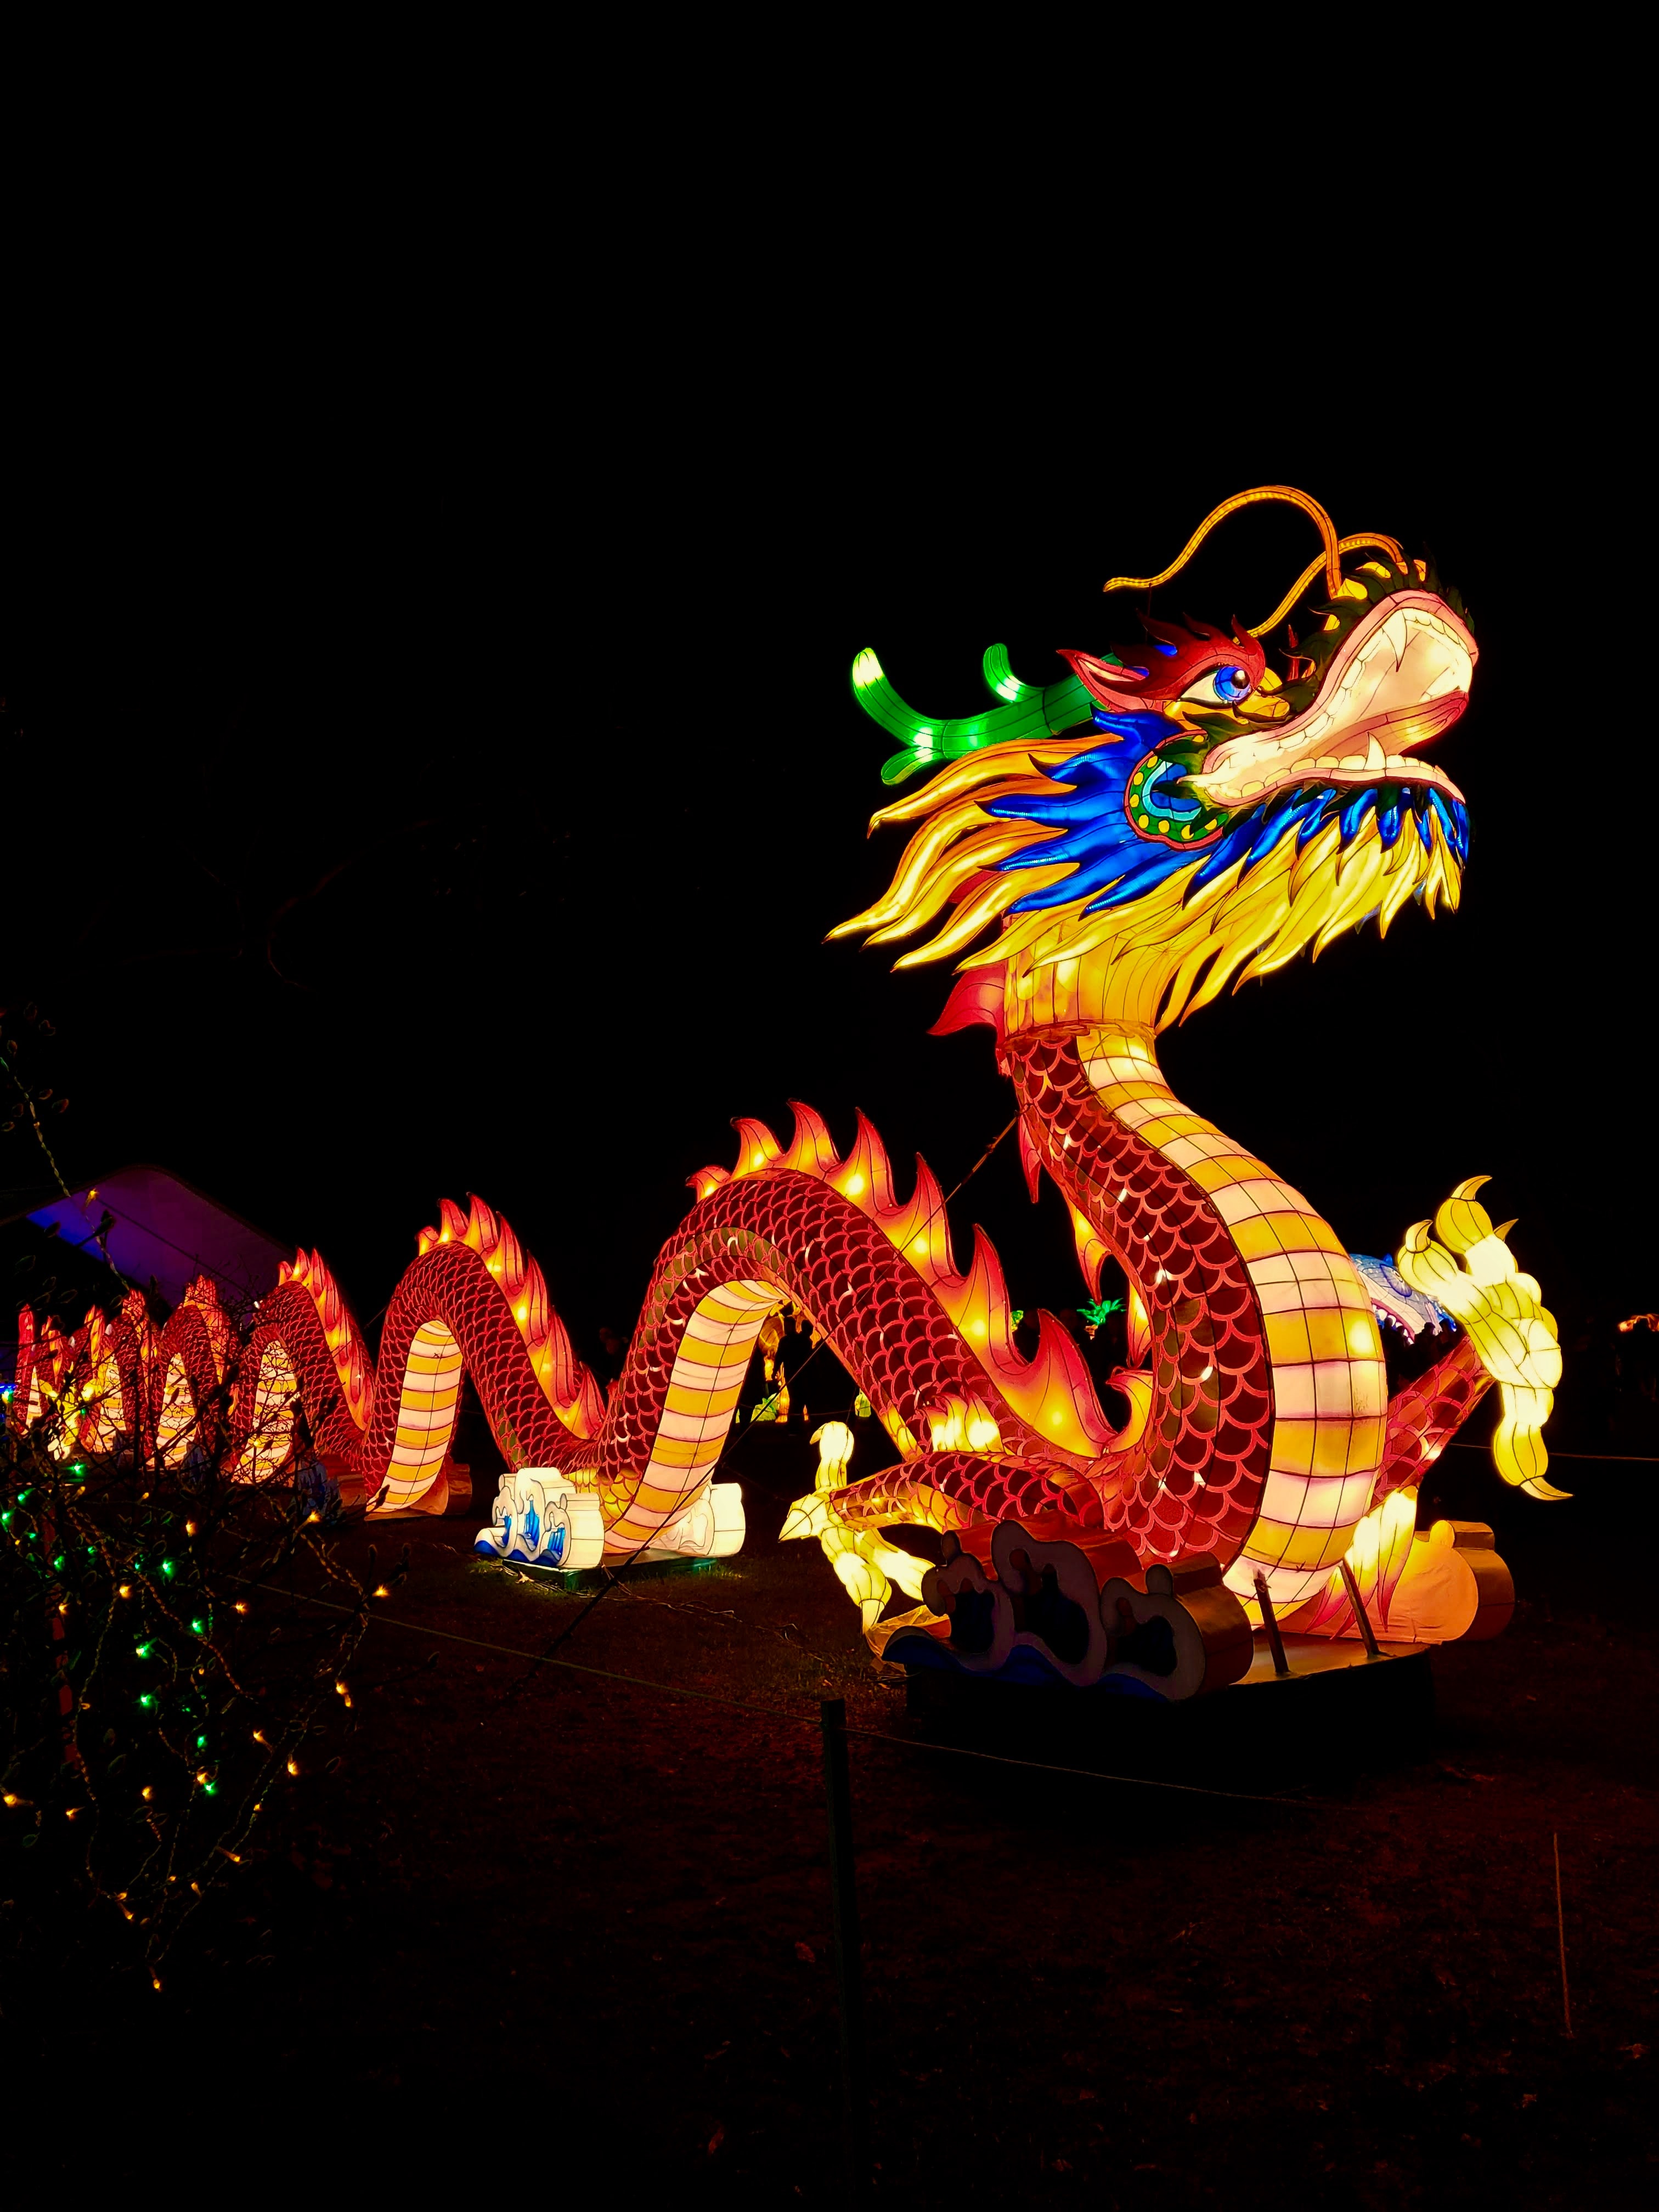 Dragon Chinois - Symbolisme, Signification, Mythologie et Festivals